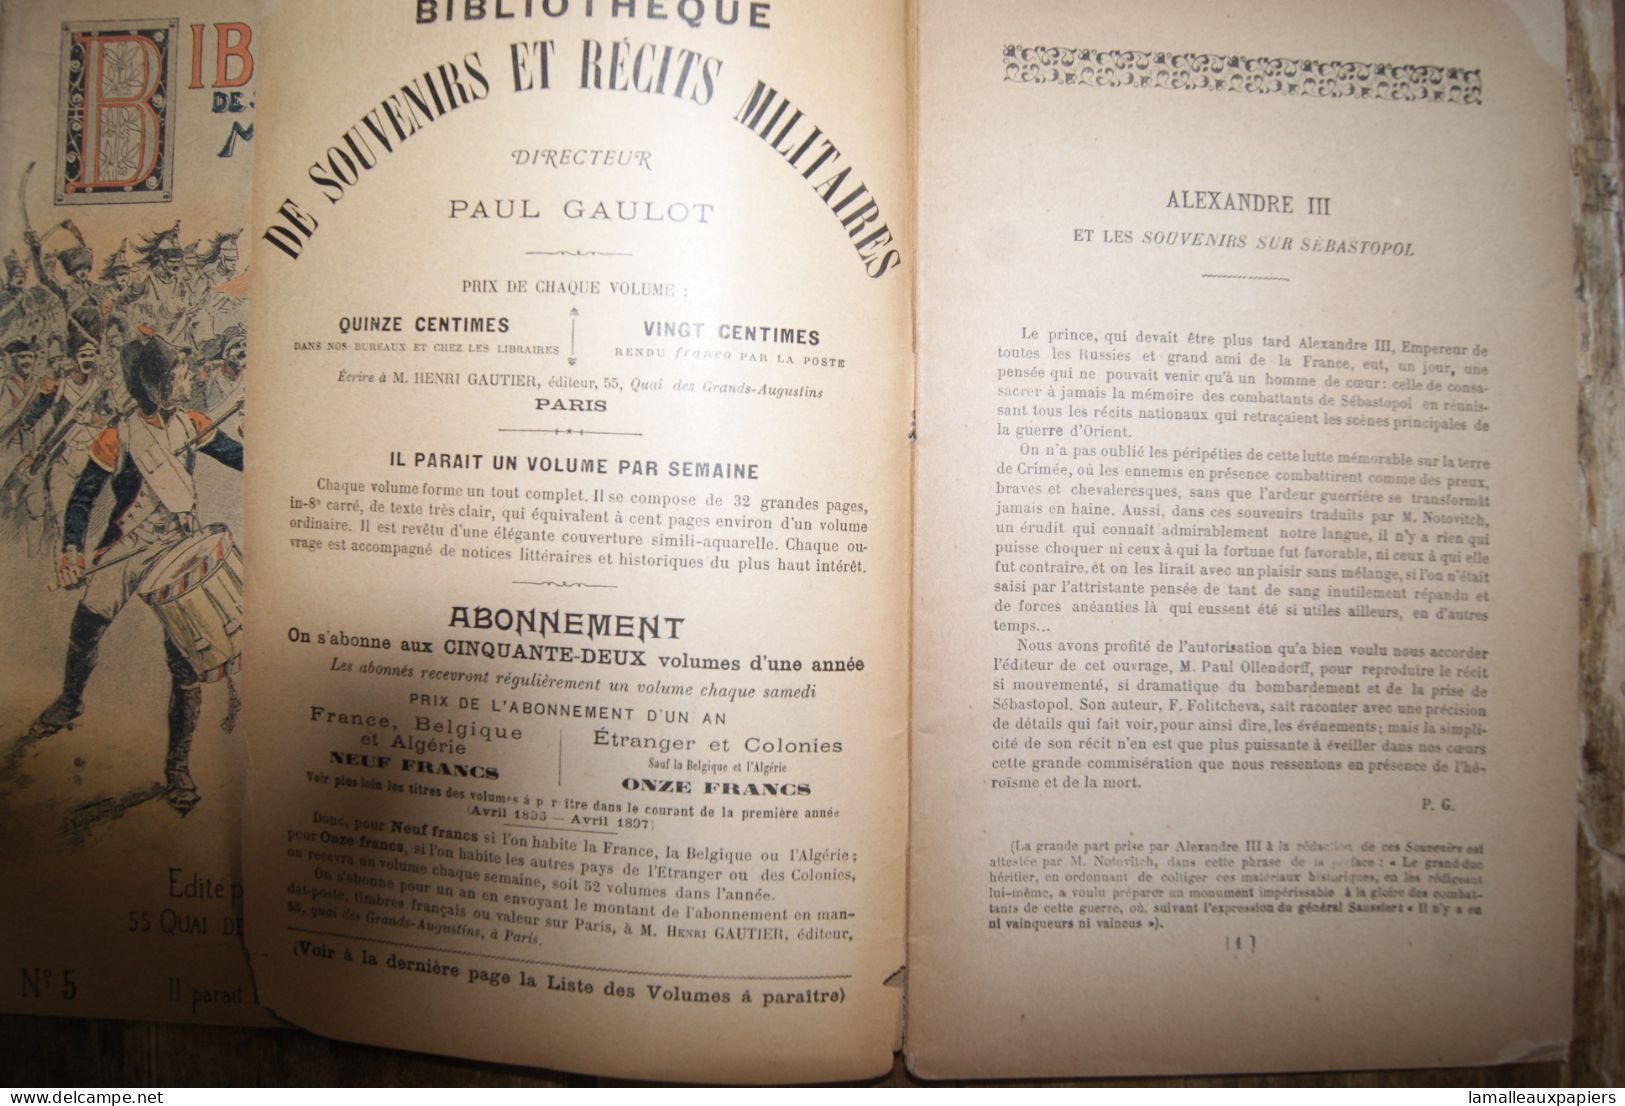 Lot De 14 Numéros De La Bibliothèque Des Souvenirs Et Récits Militaires (1896-97) - Français